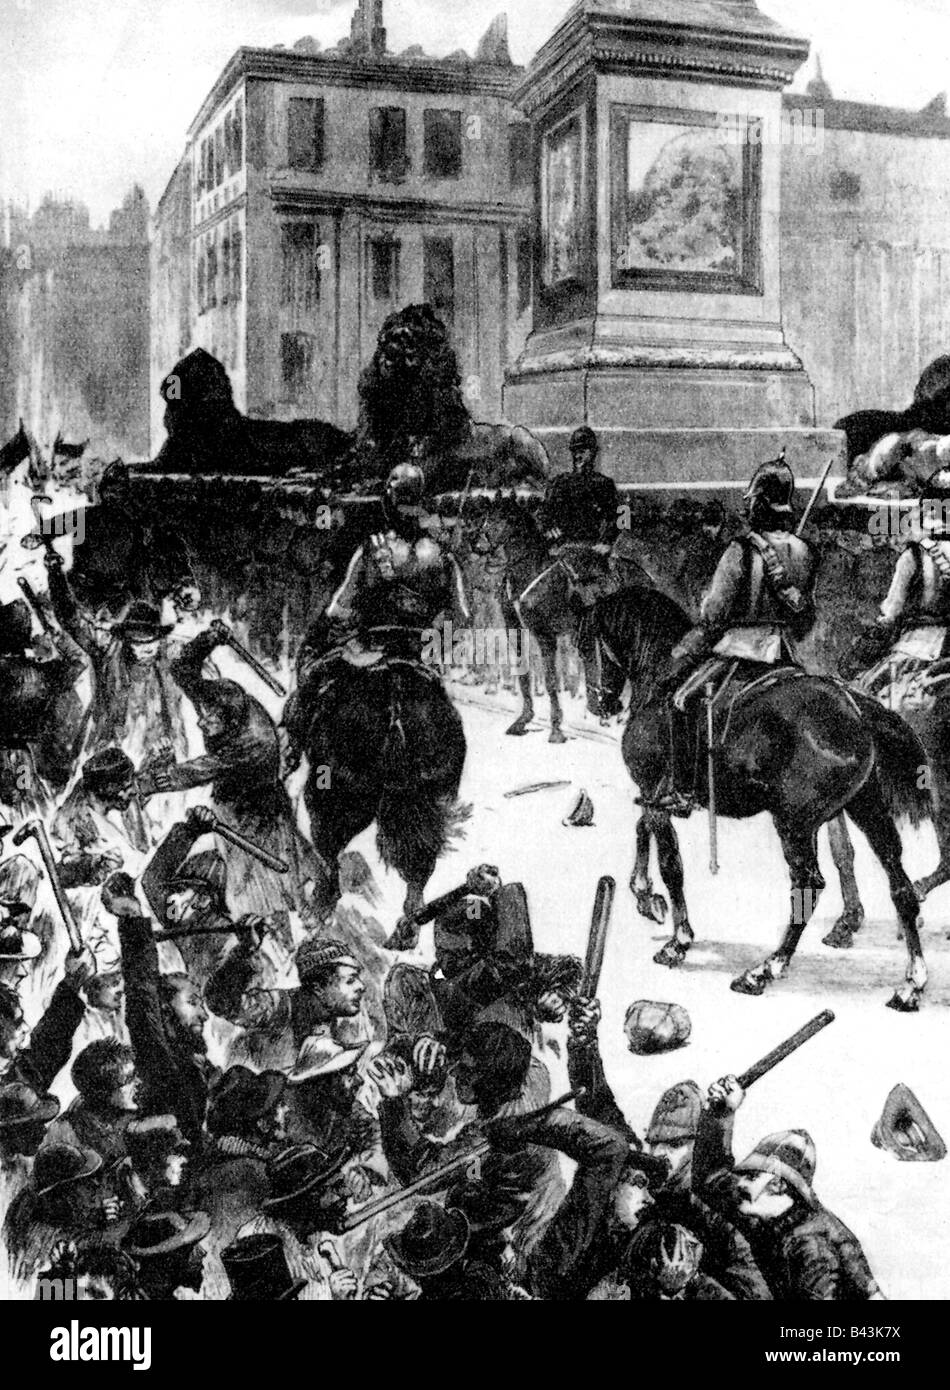 Geographie/Reisen, Großbritannien, Politik, "Blutiger Sonntag", London, 13.11.1887, die Polizei stoppt die Demonstration auf dem Trafalgar Square, zeitgenössische Zeichnung, 19. Jahrhundert, Stockfoto